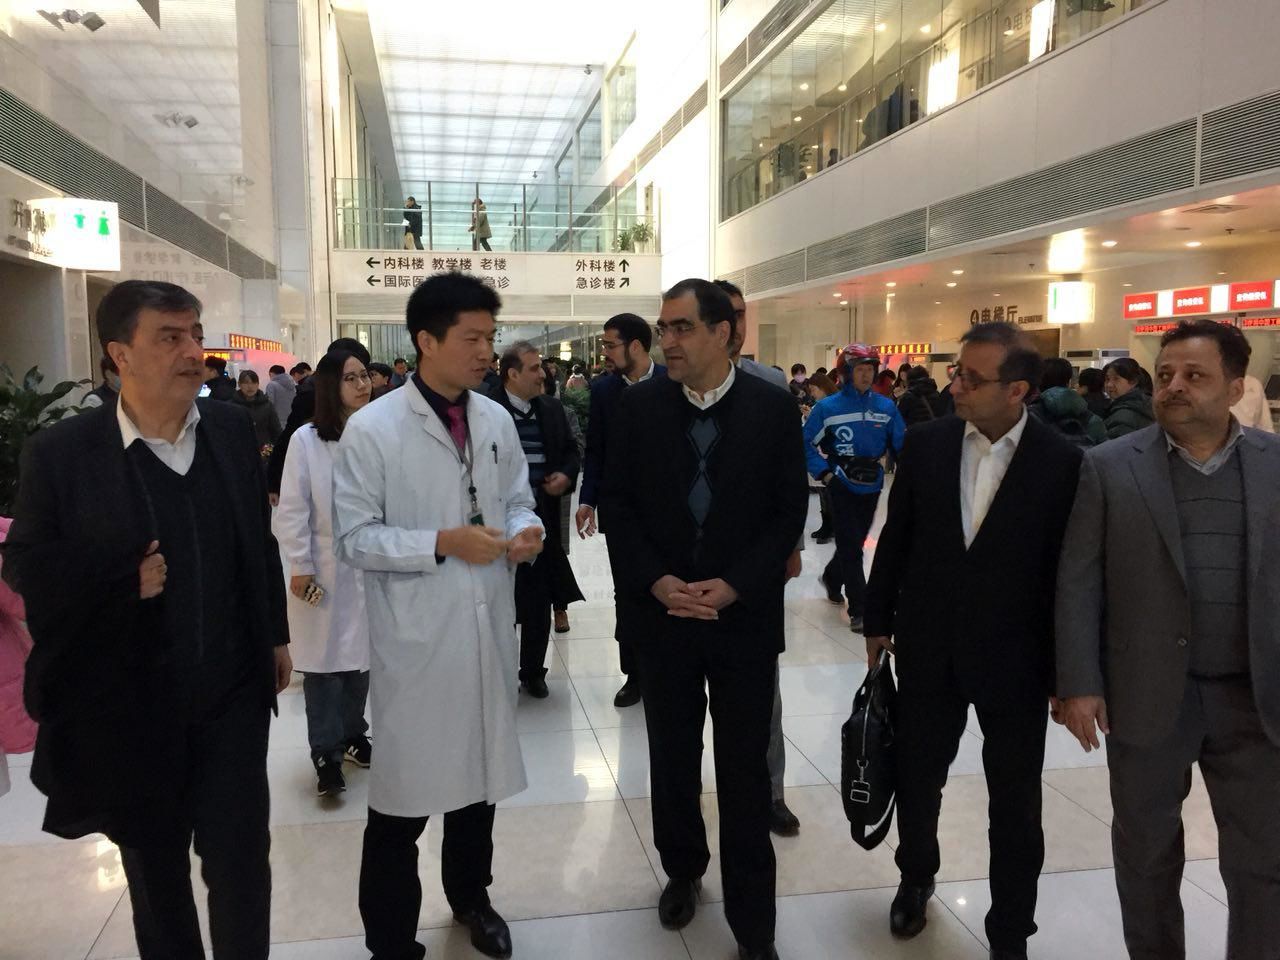 وزیر بهداشت از بیمارستان طب سنتی پکن بازدید کرد